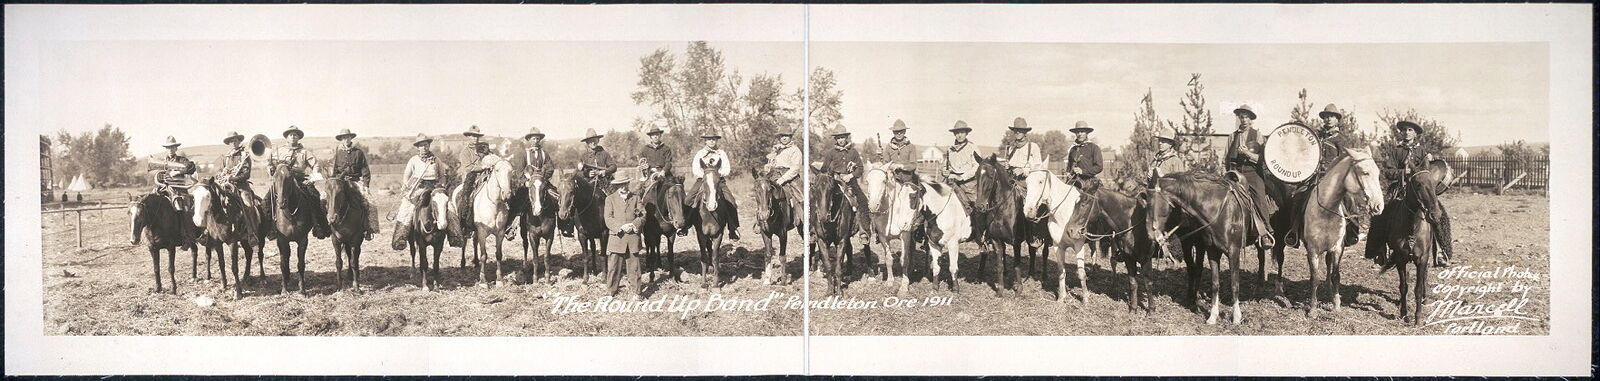 1911 Panoramic: The Round-Up Band,Pendleton,Umatilla County,Oregon 97801